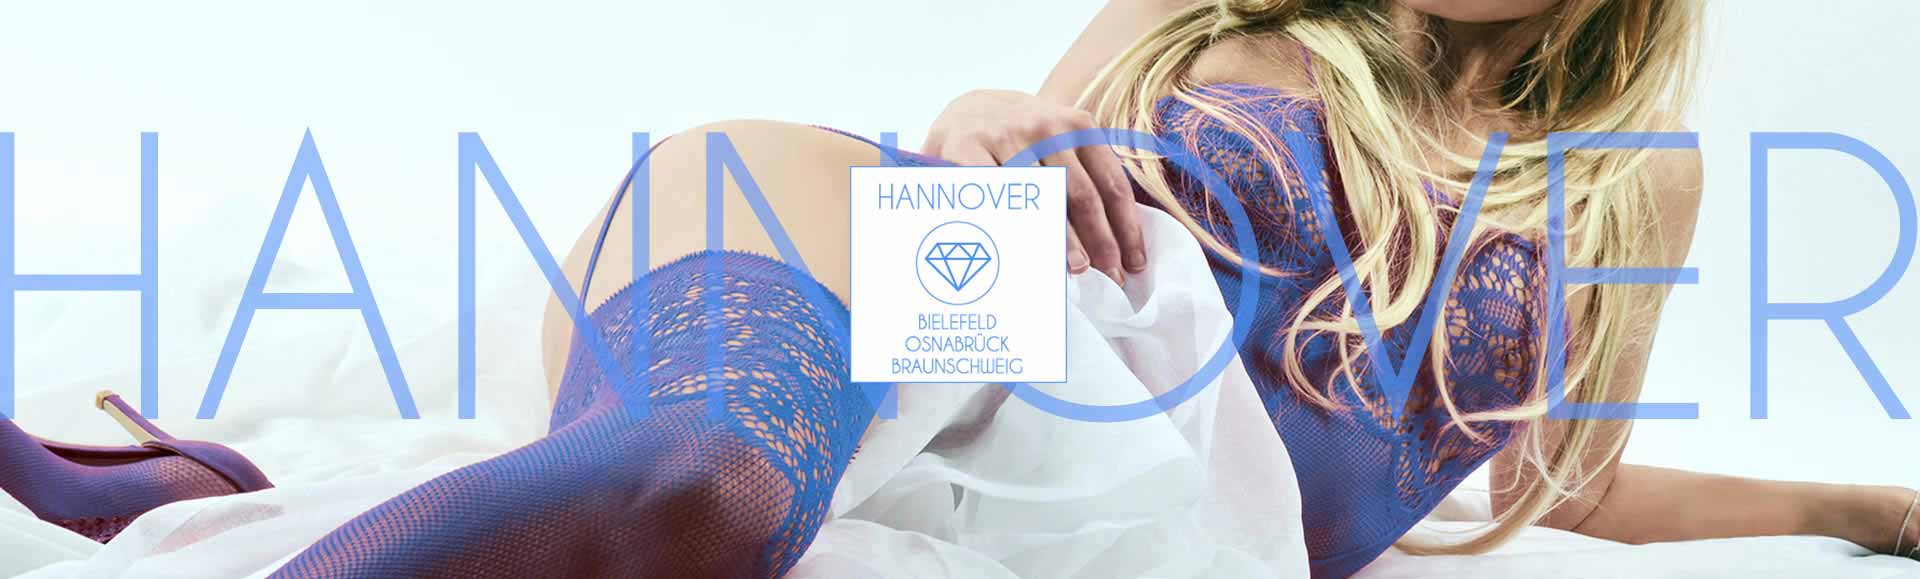 Begleitservice Hannover - Escort Ladies - Escortservice Hannover